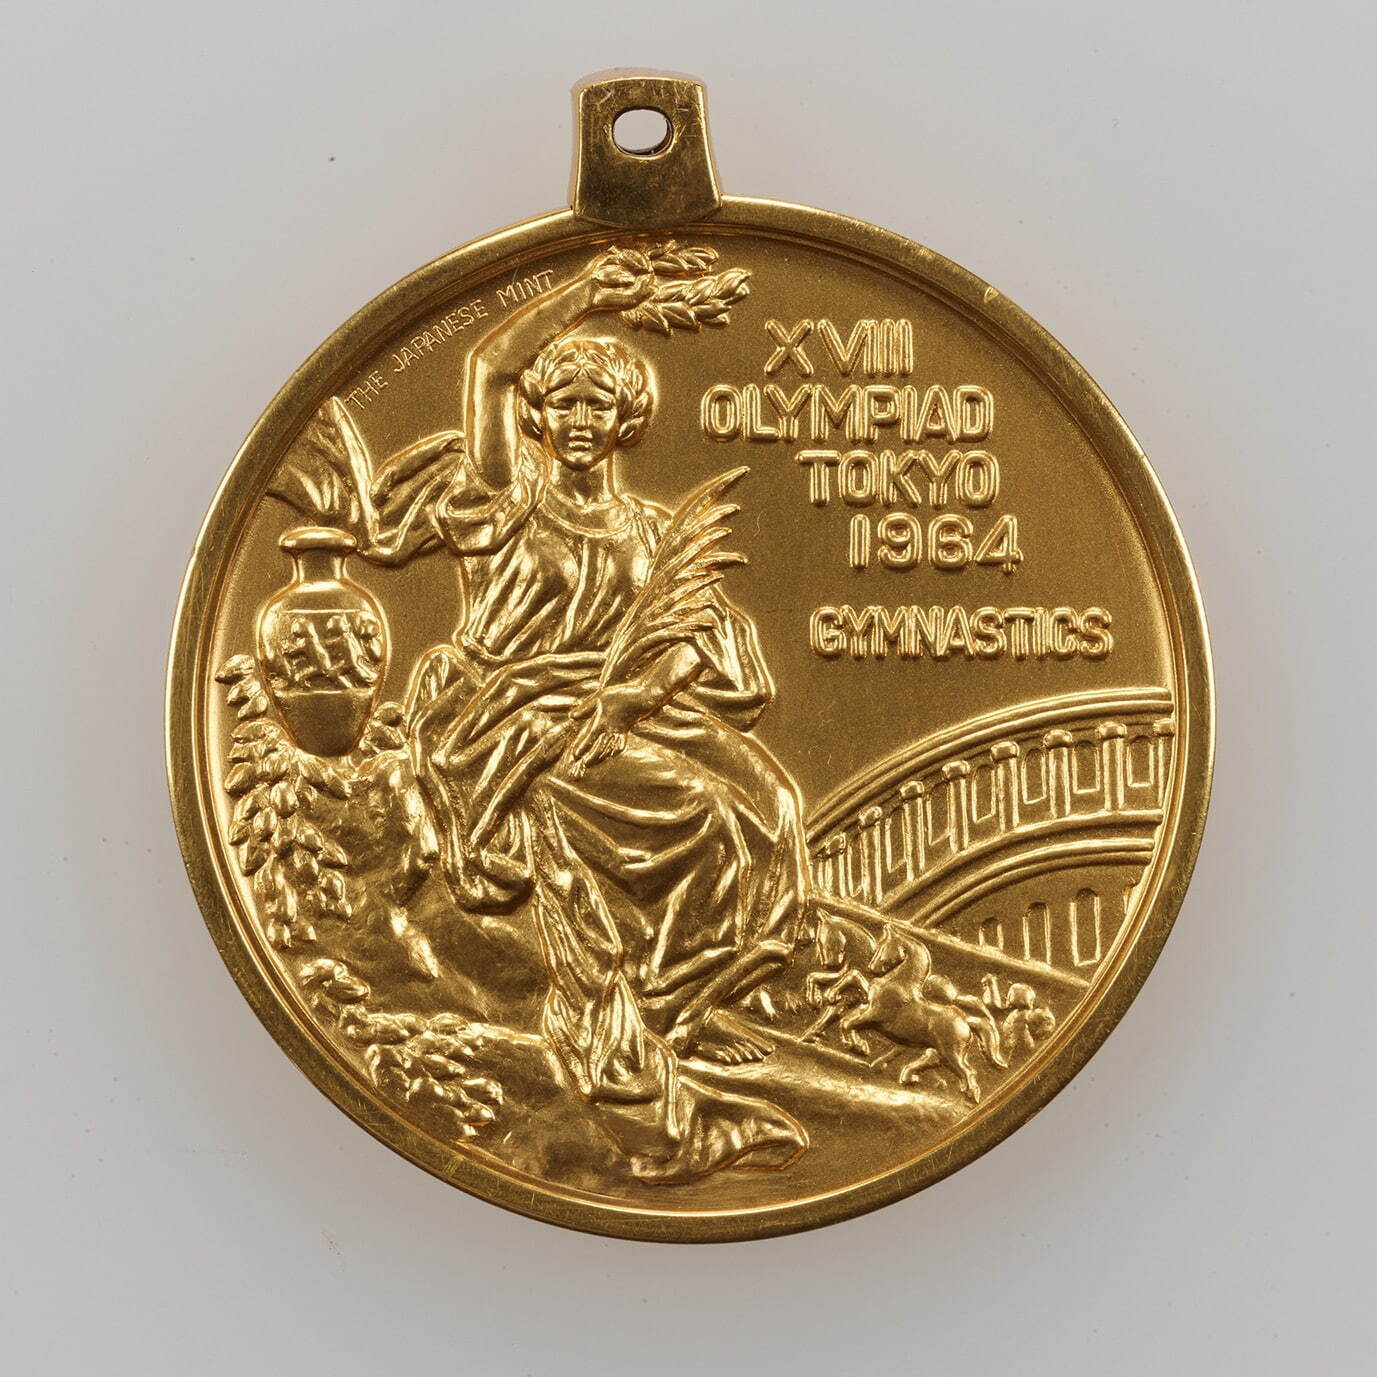 1964年東京大会 金メダル 昭和39年(1964) 秩父宮記念スポーツ博物館蔵